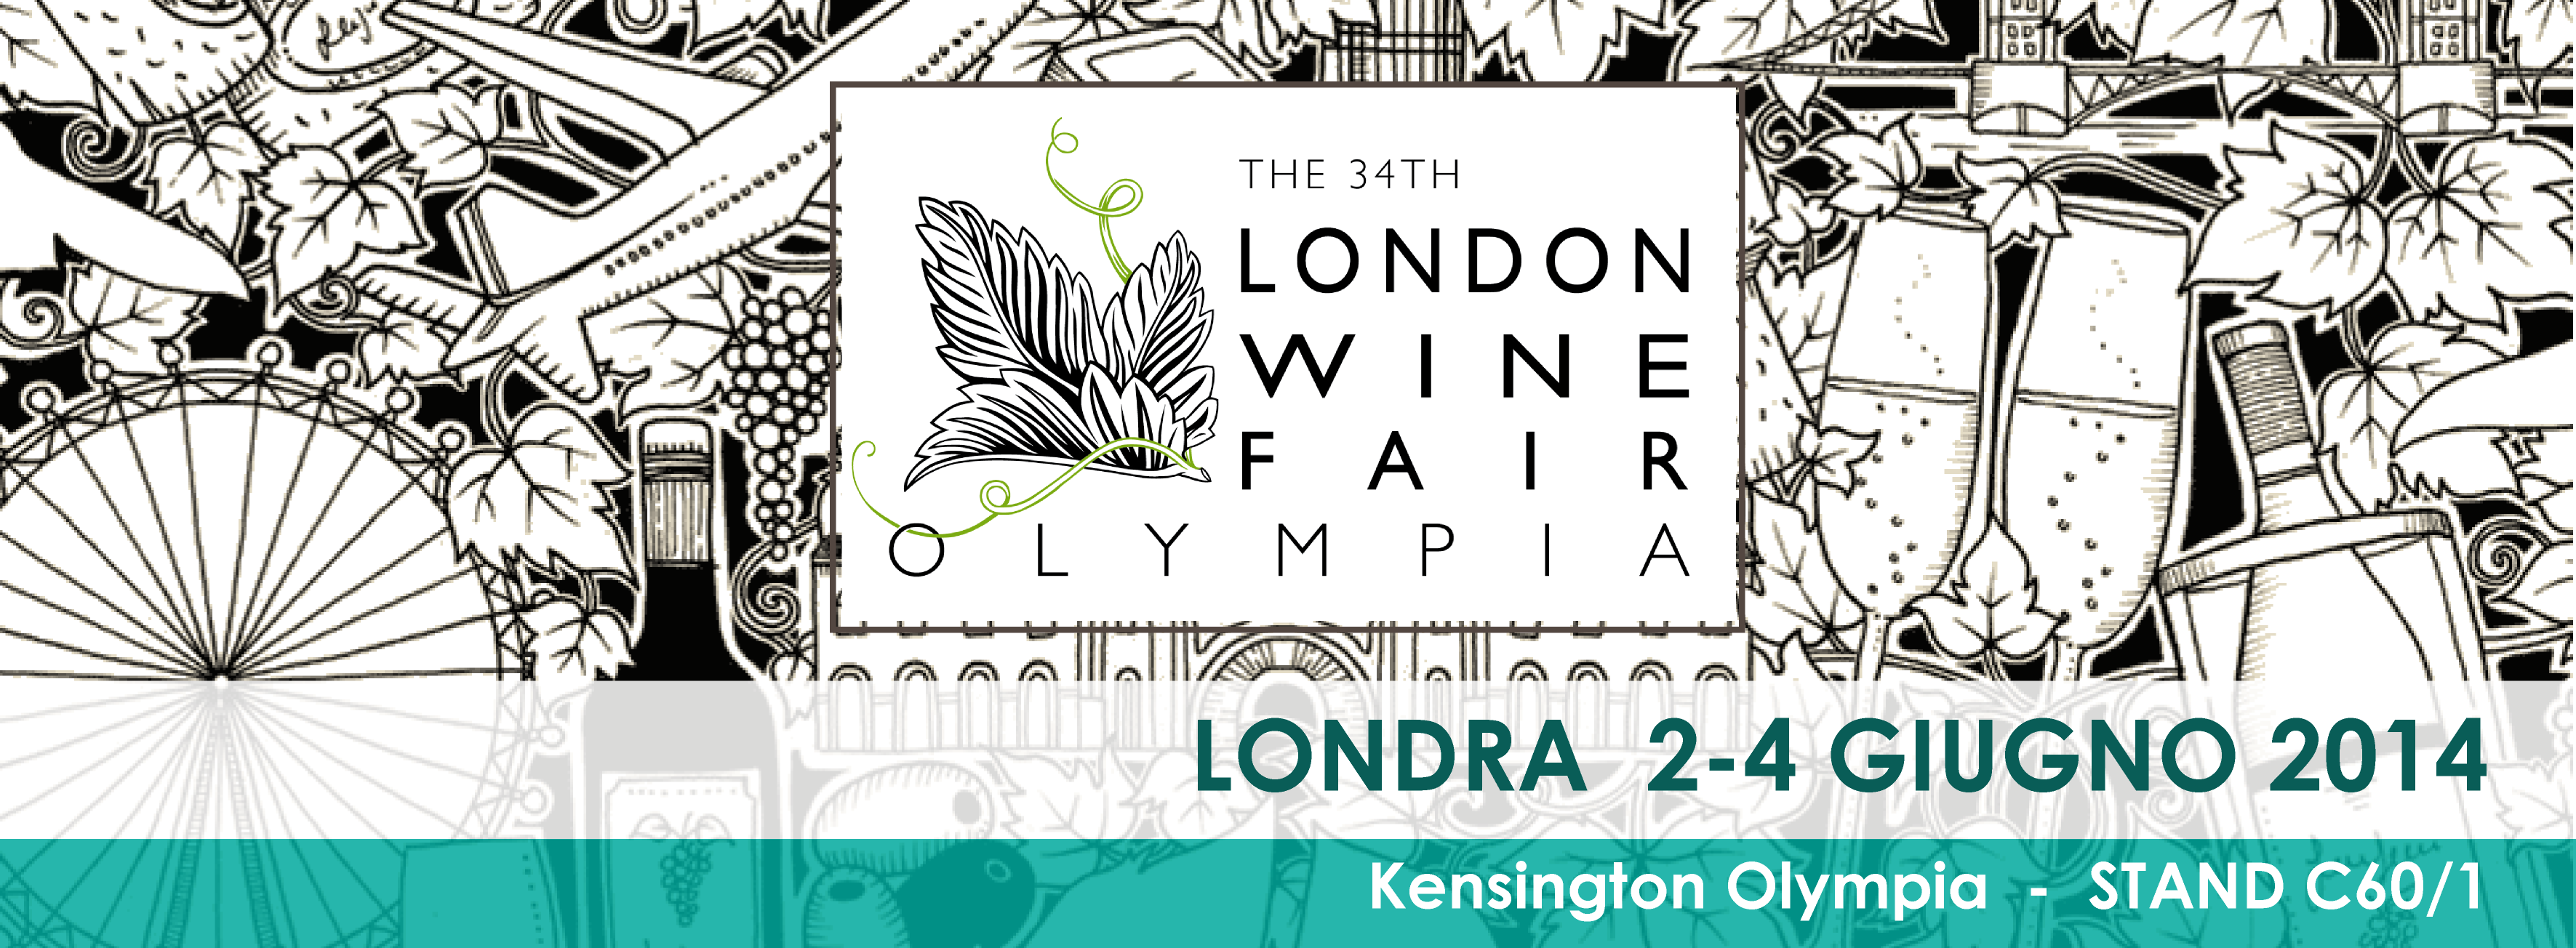 London Wine Fair 2014 dal 2 al 4 Giugno 2014